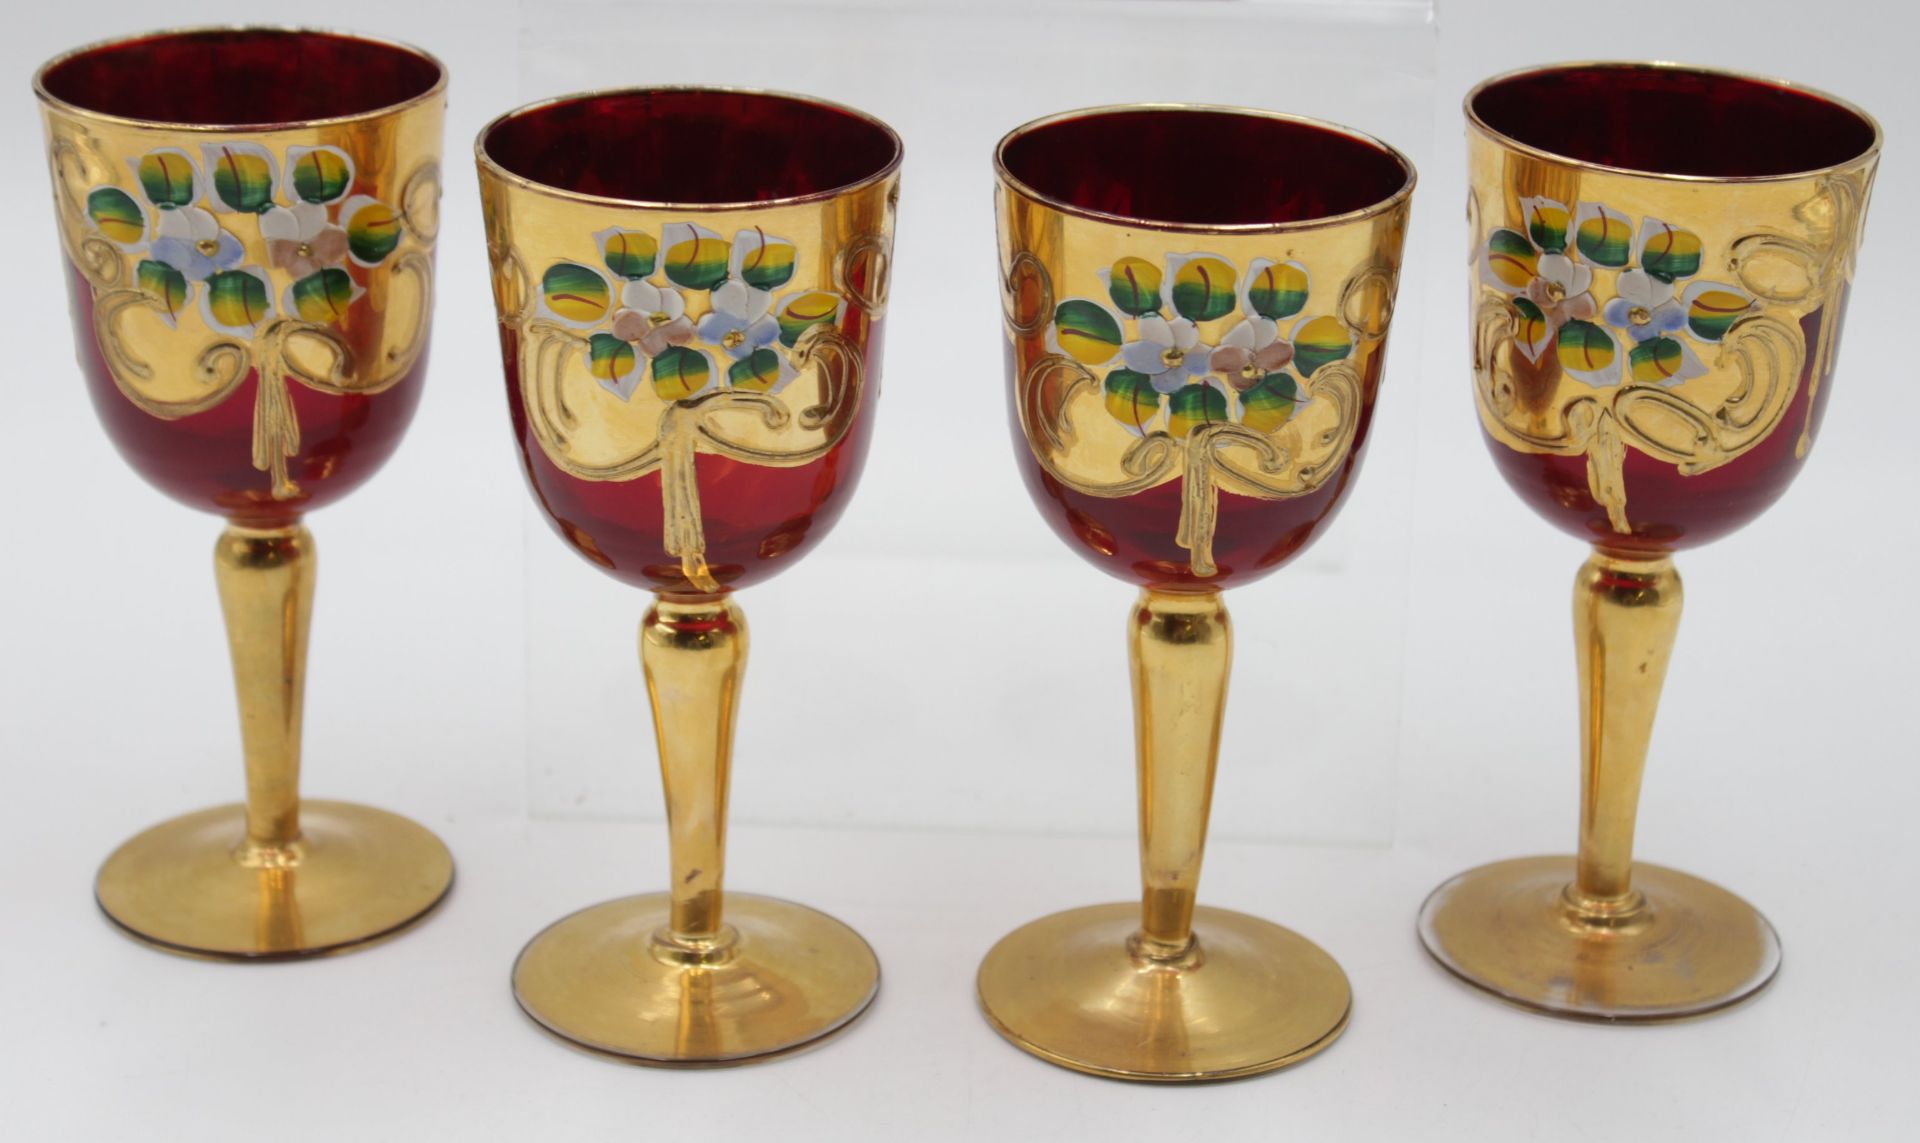 Karaffe mit 4 Weingläsern, Italien, rotes Glas mit floraler Emaillemalerei, Stöpsel fehlt, ca. H-29 - Bild 2 aus 5